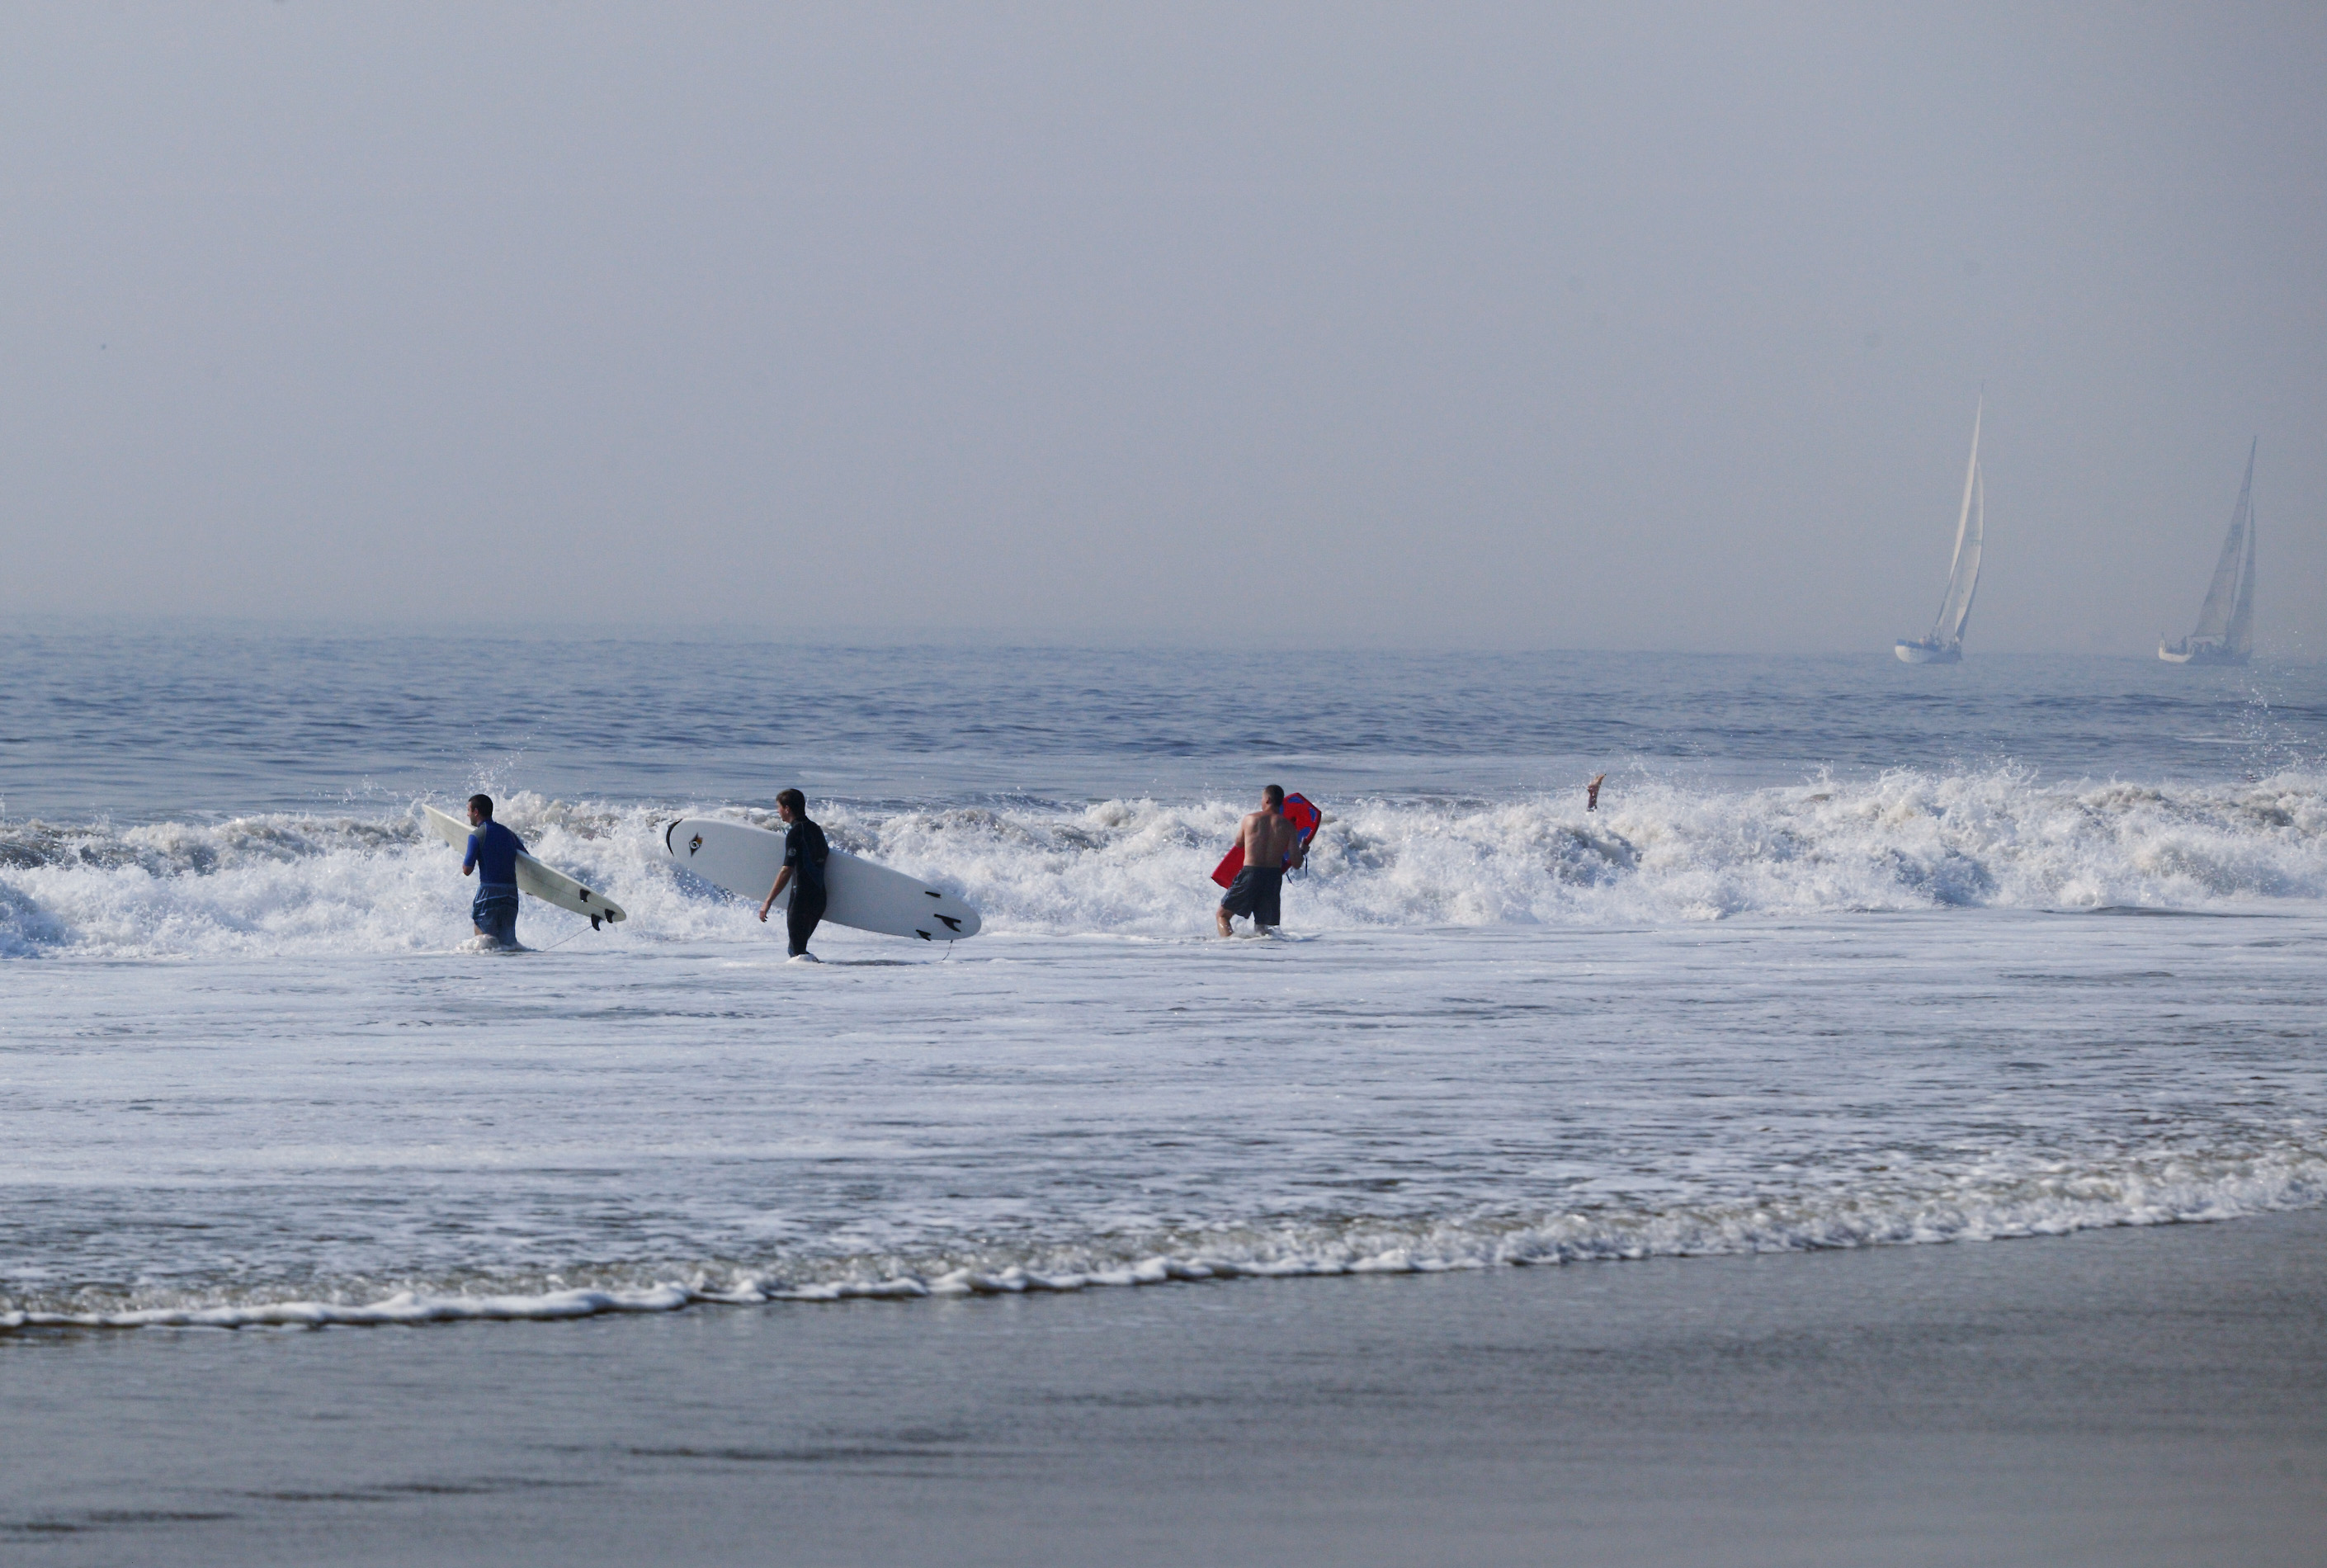 fotografia, materiale, libero il panorama, dipinga, fotografia di scorta,La sfida di surfisti, praticando il surfing, onda, mare, surfboad